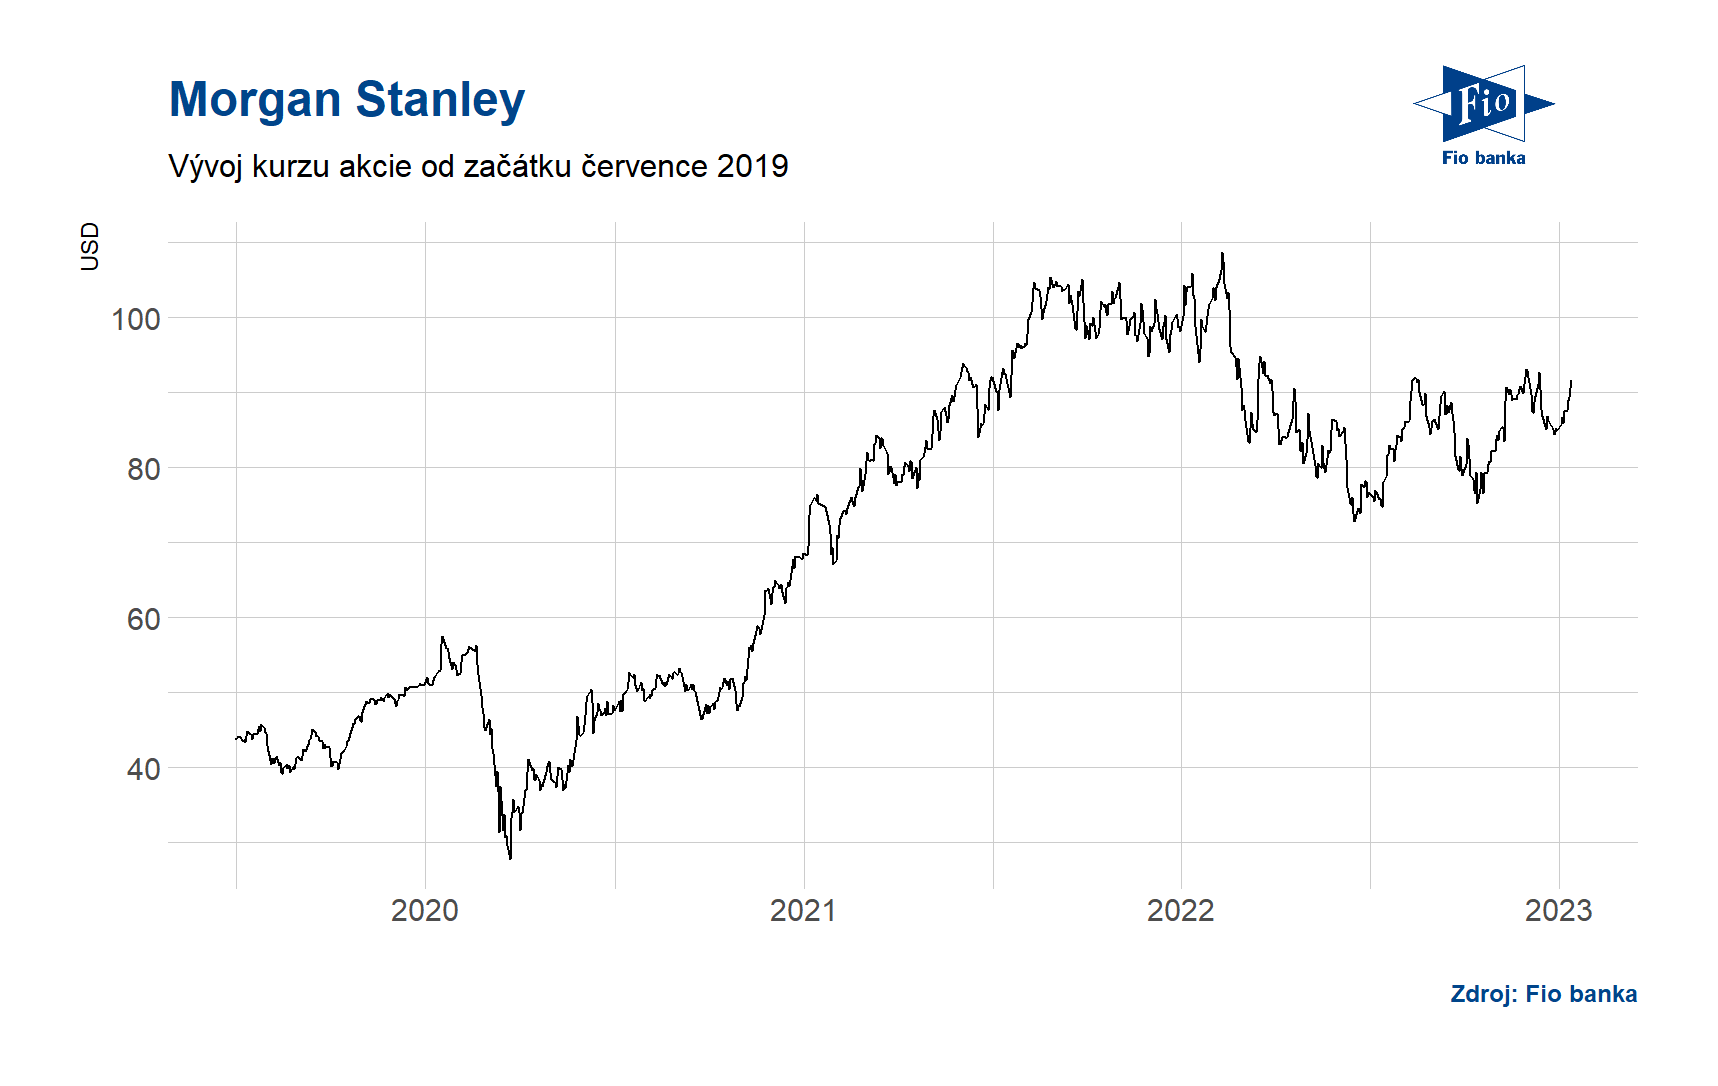 Vývoj akcie Morgan Stanley